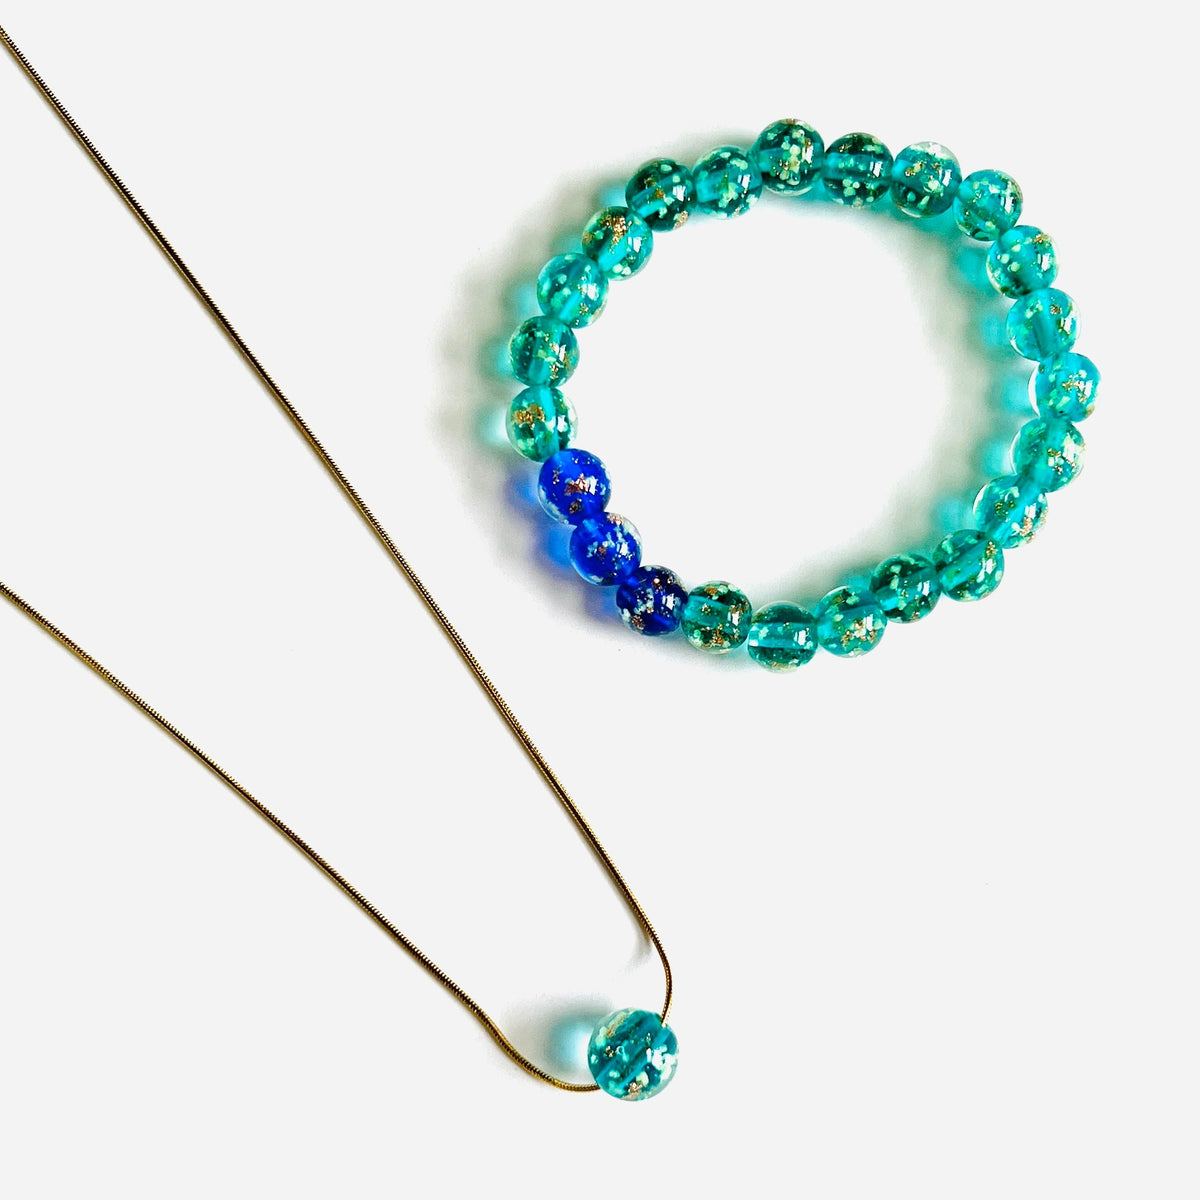 Mermaid Glow Glass Bracelet Jewelry - 